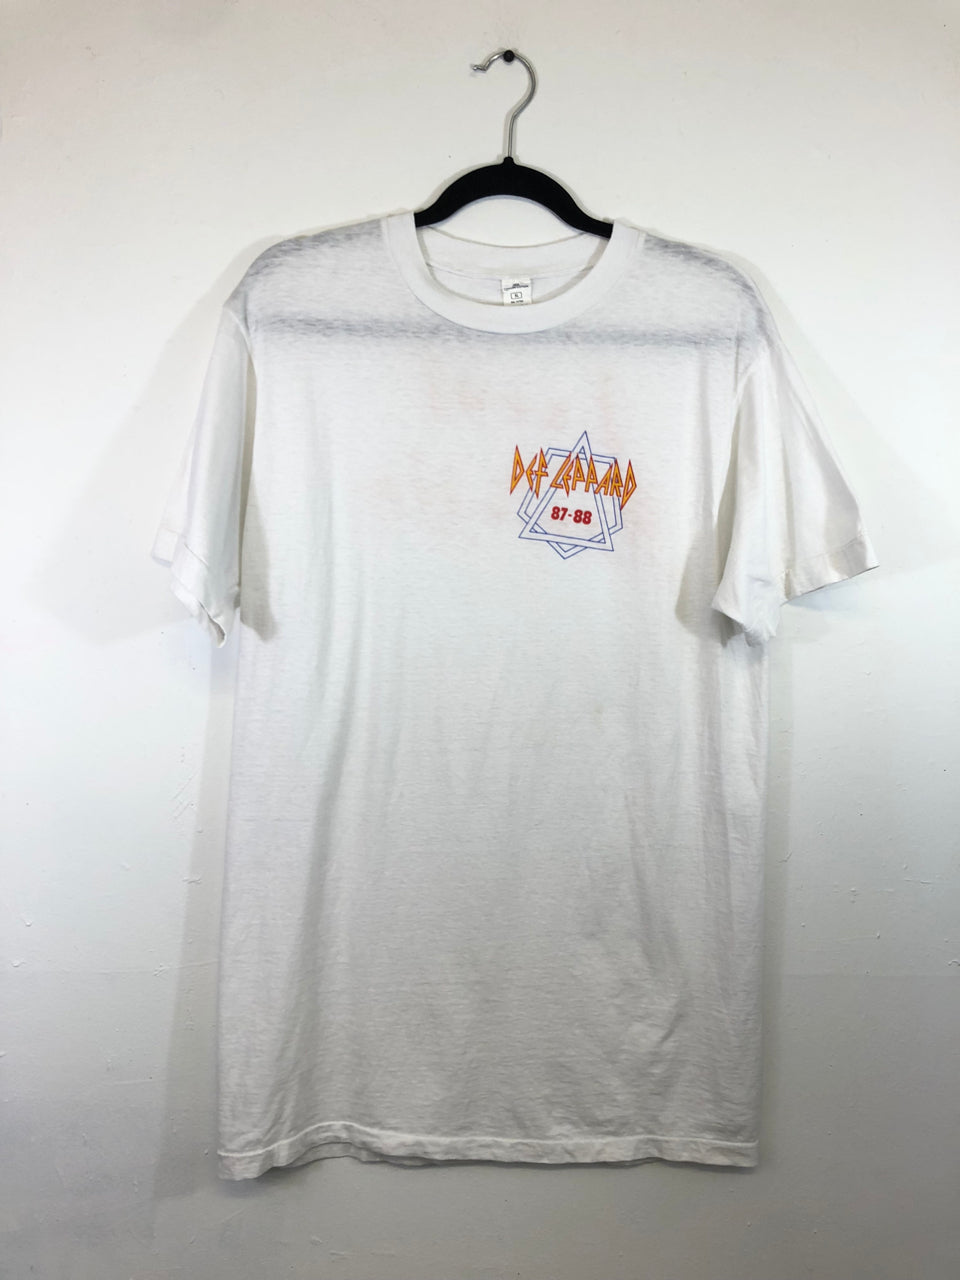 UB40 Labour of Love Tour 1990 T-Shirt – East Village Vintage